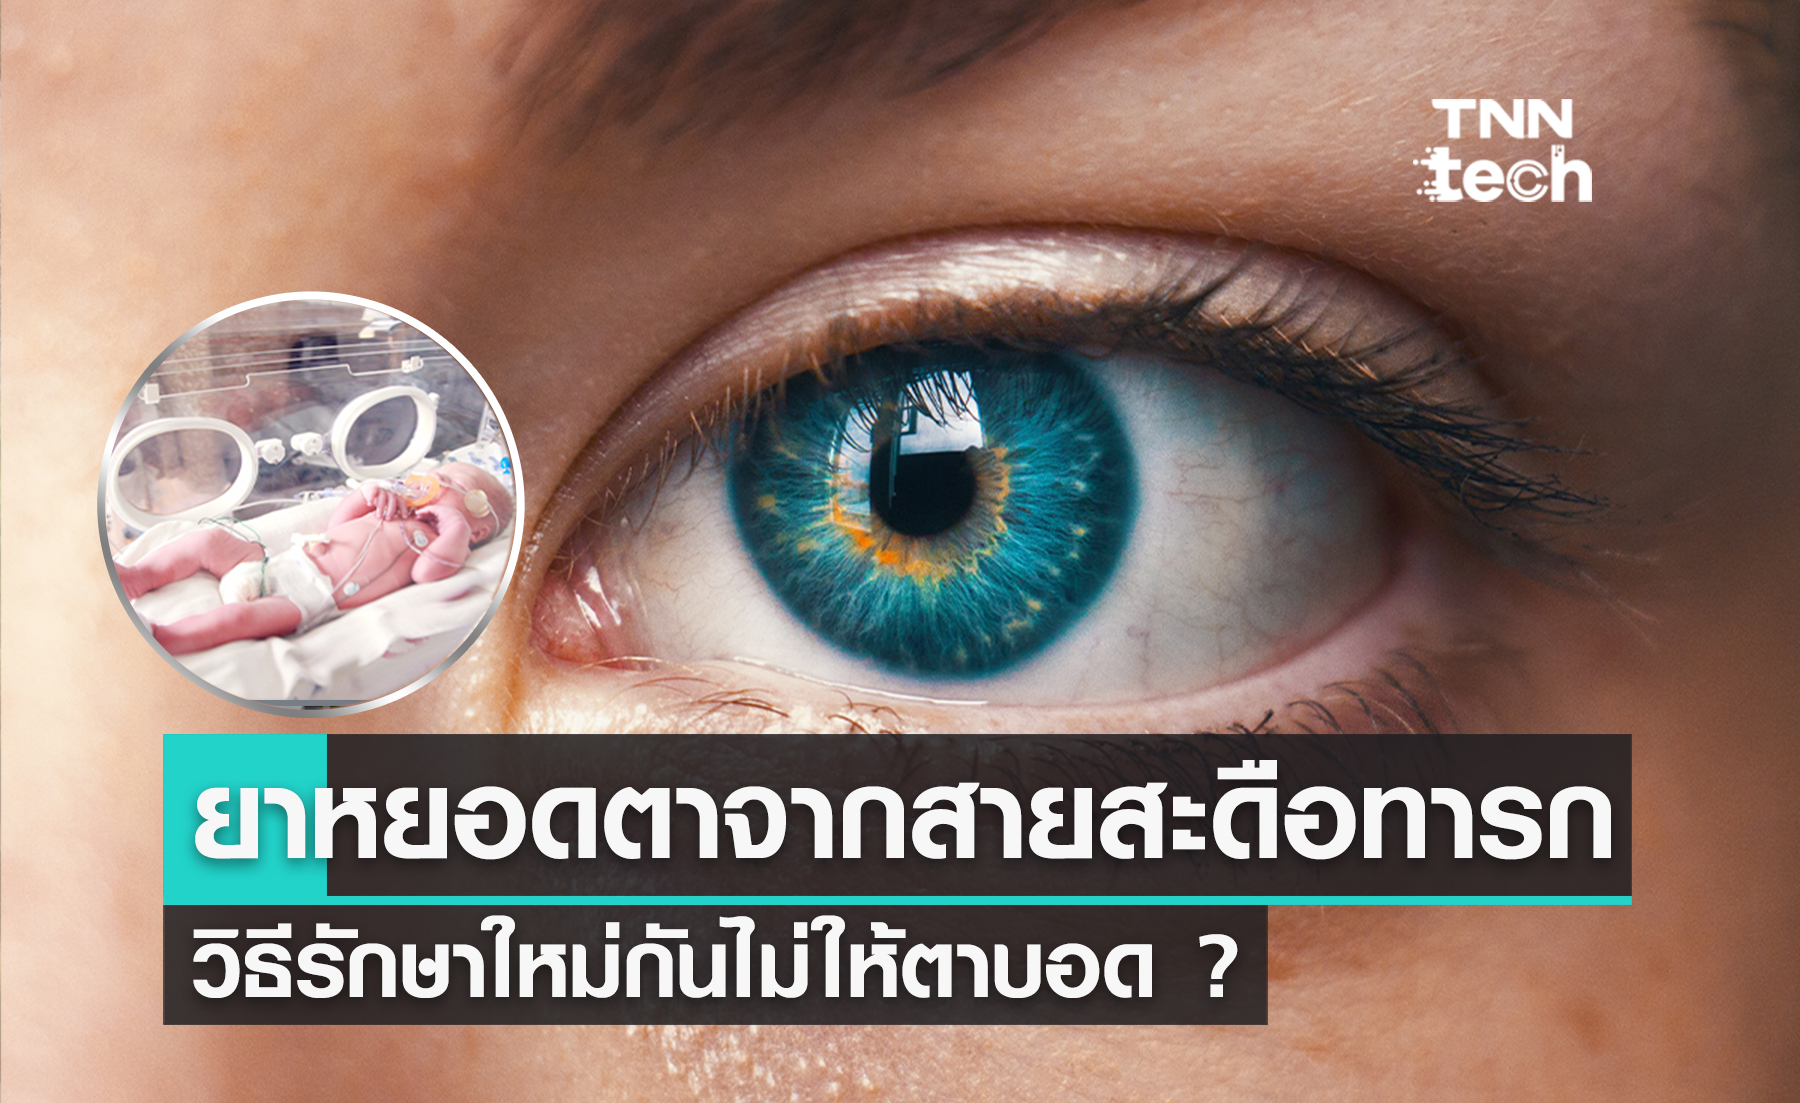 ยาหยอดตาจากสายสะดือทารก วิธีใหม่ป้องกันไม่ให้ตาบอด ?